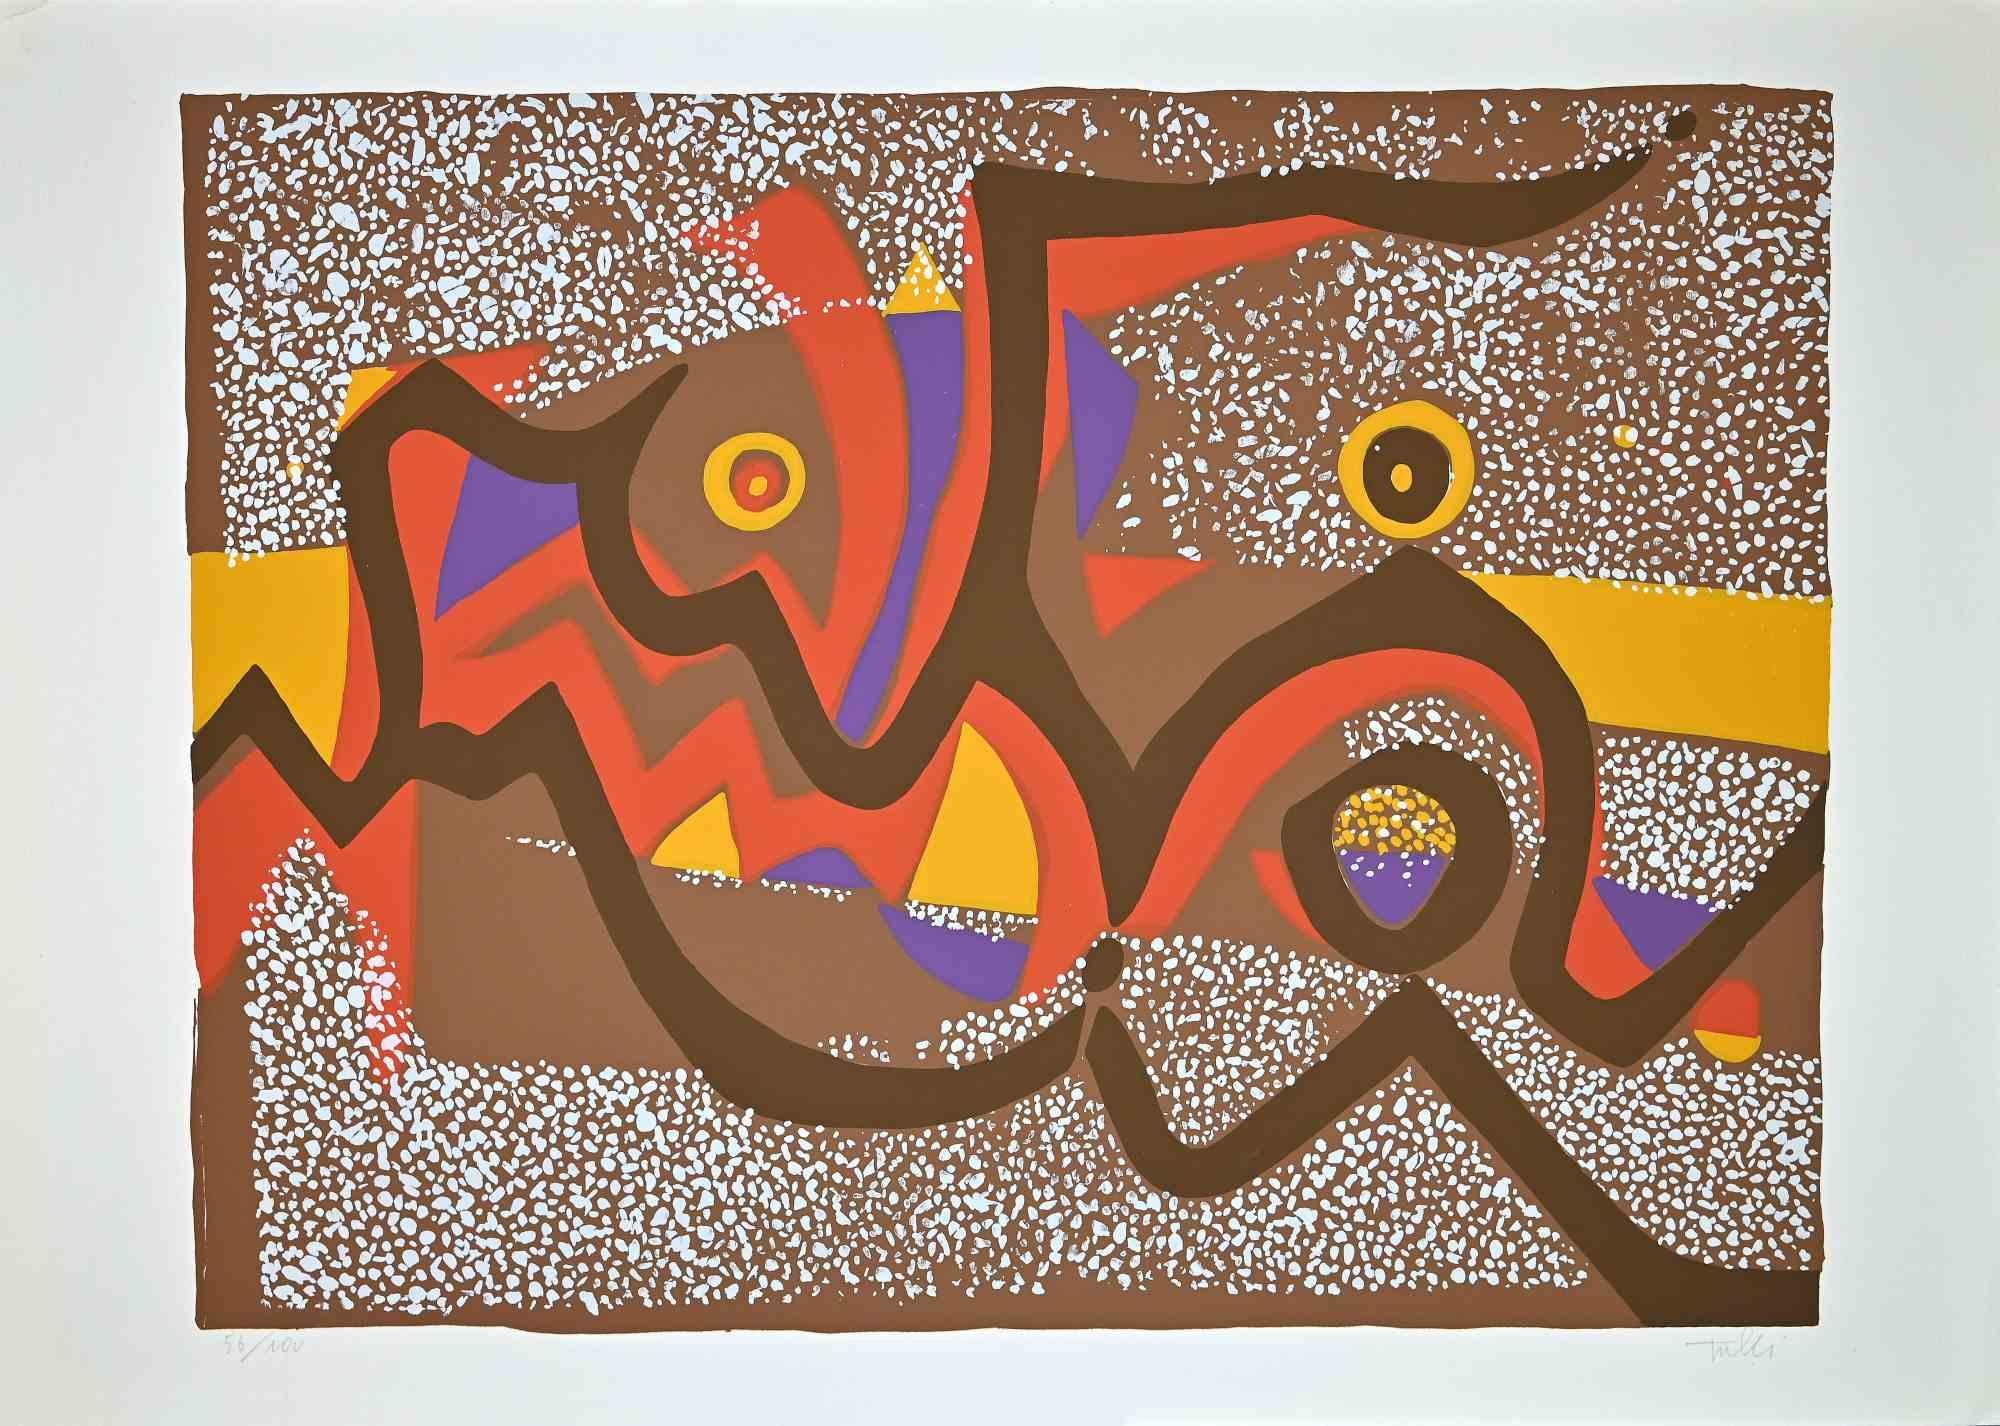 Composition brune est une sérigraphie colorée sur papier, réalisée dans les années 1970 par l'artiste italien  Wladimiro Tulli.
Signé à la main en bas à droite et numéroté au crayon dans la marge inférieure. Edition de 56/100 tirages.

Bonnes